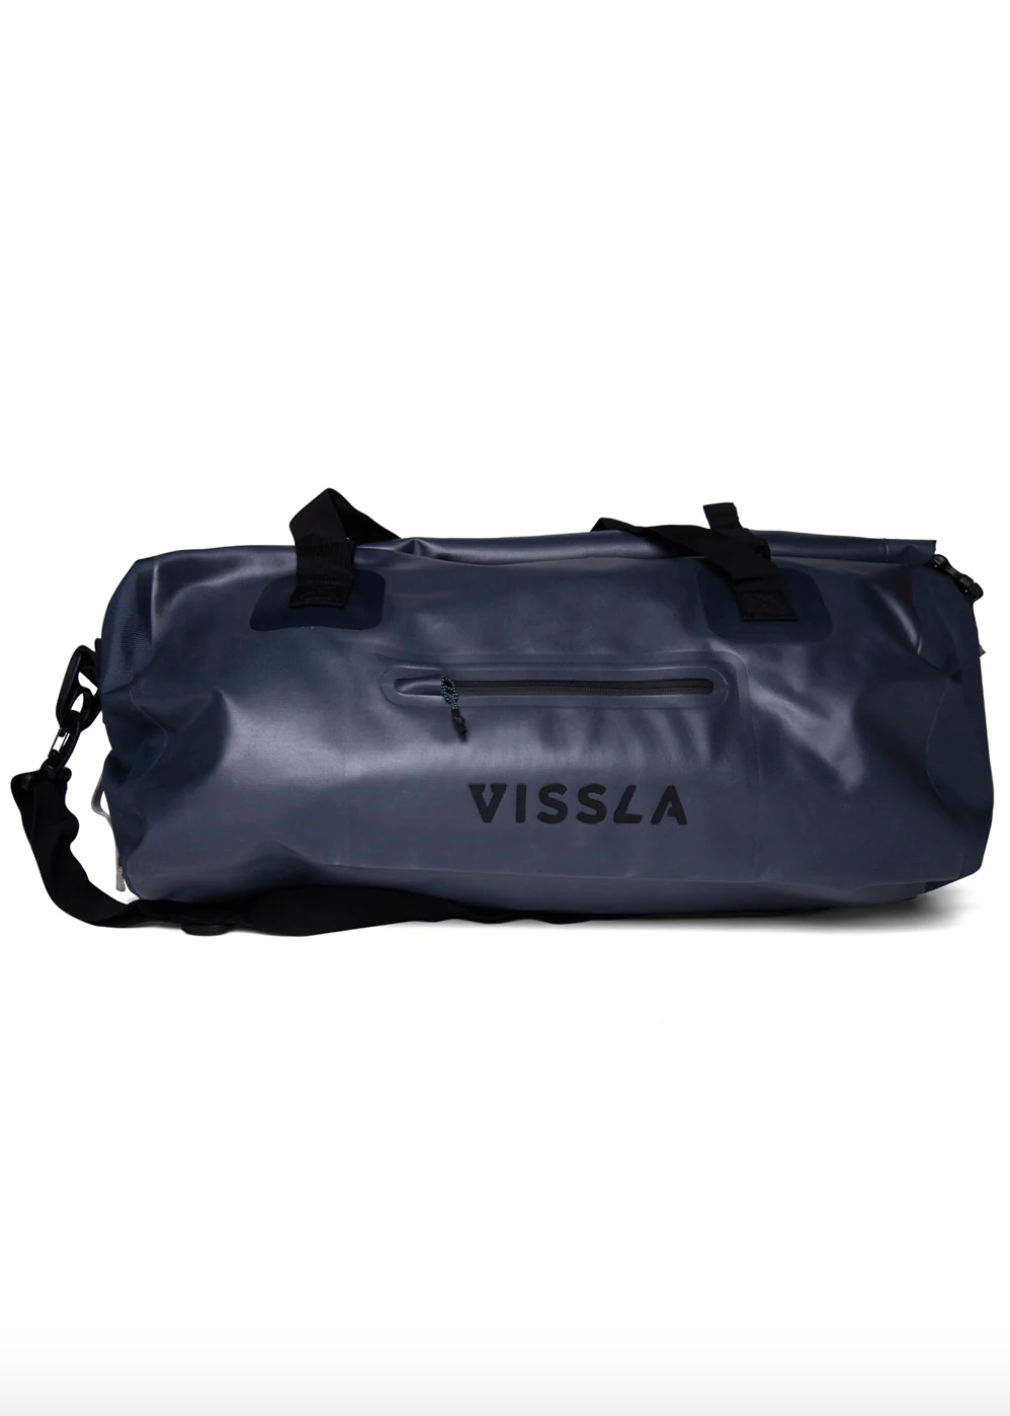 Vissla North Seas 40L Dry Duffle Bag